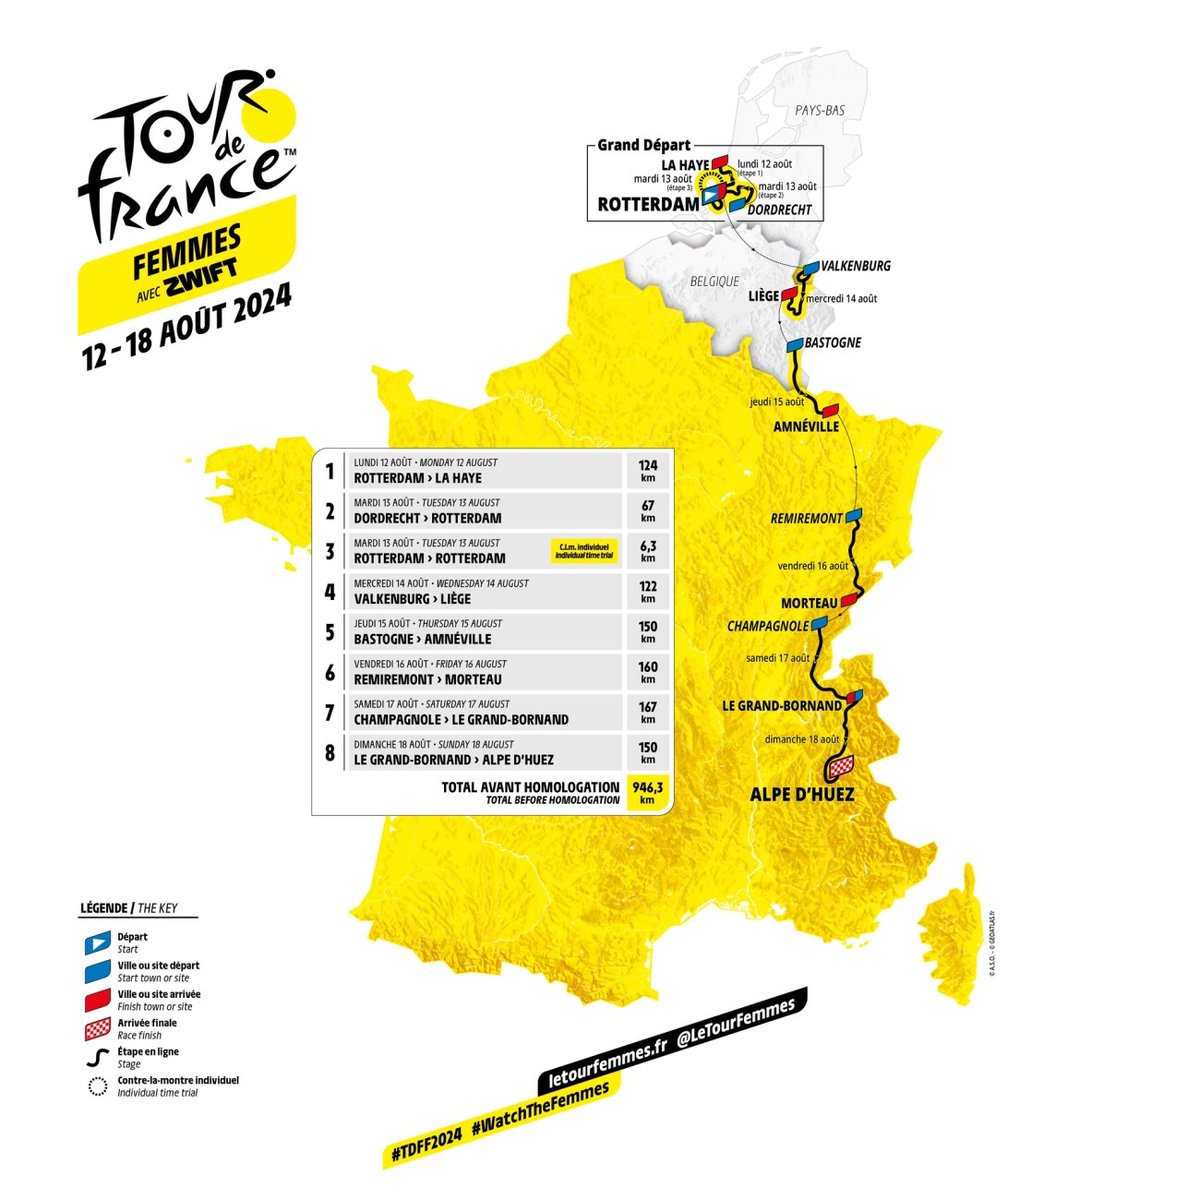 Tour de France Femmes 2024'ün rotası da bugün açıklandı. 8 etaplık yarış, 8. gün Alpe d'Huez zirve finişiyle bitiyor. #TDFF2024